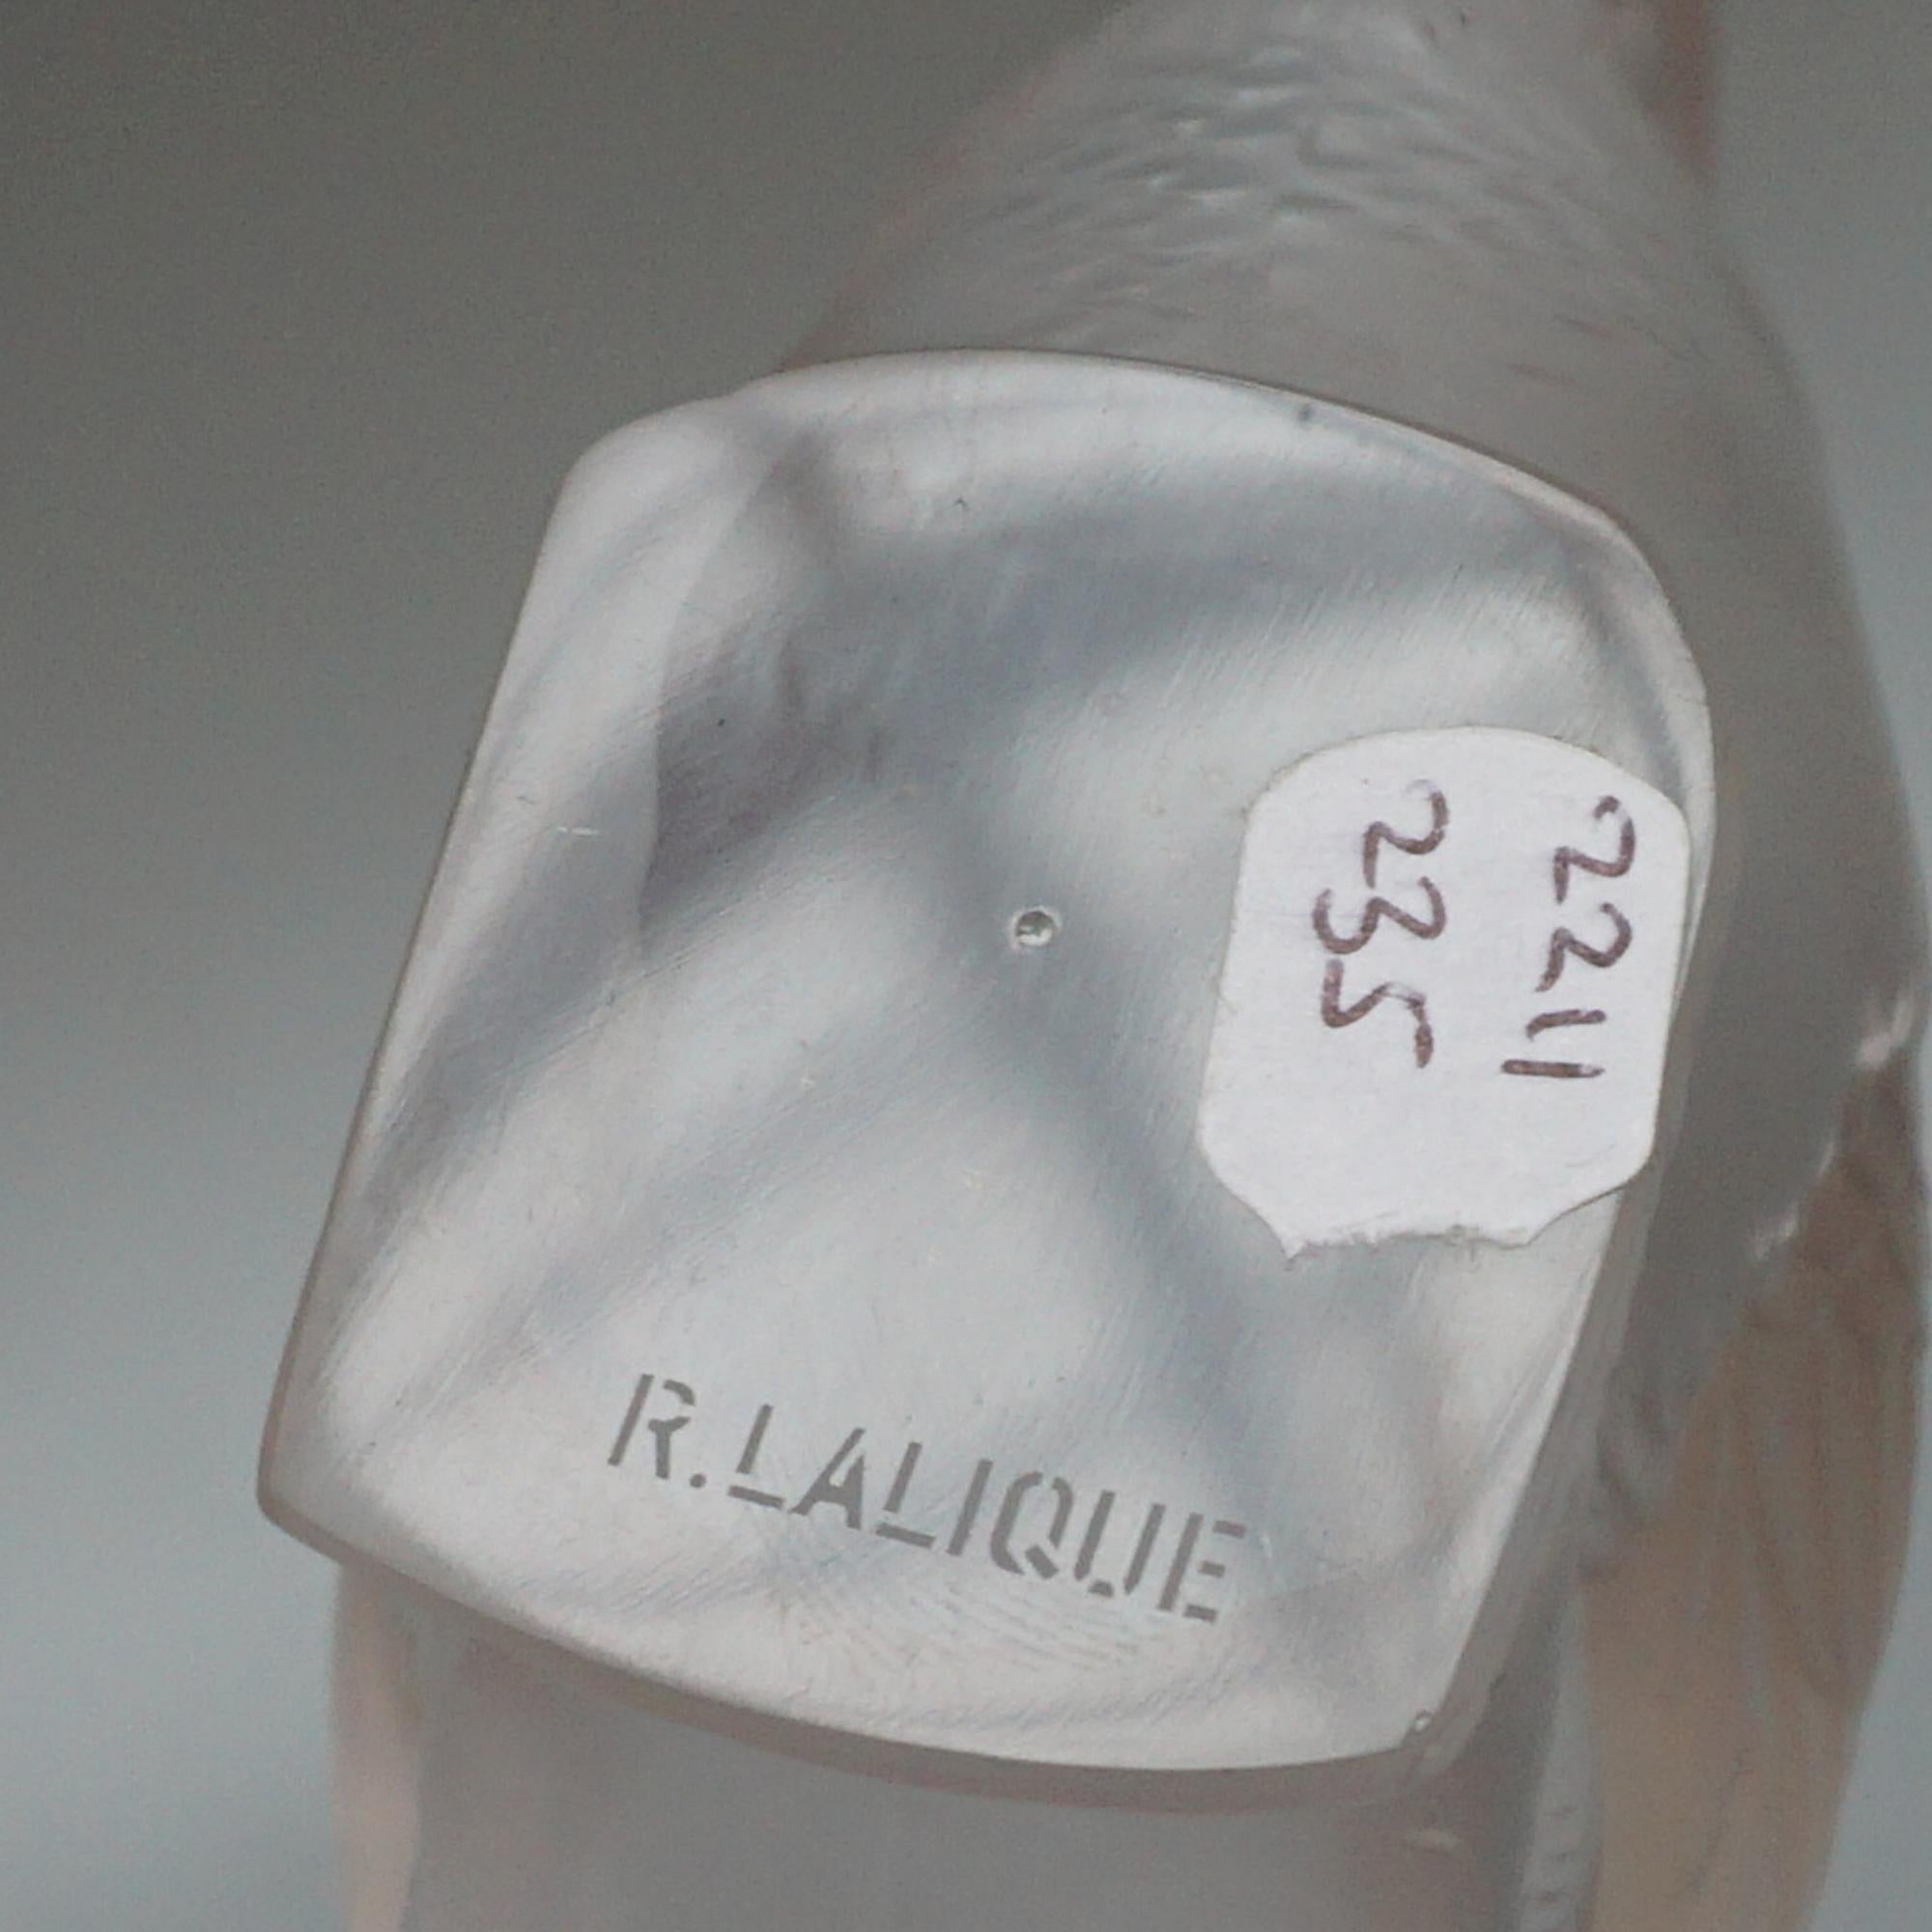 Presse-papiers Rene Lalique 